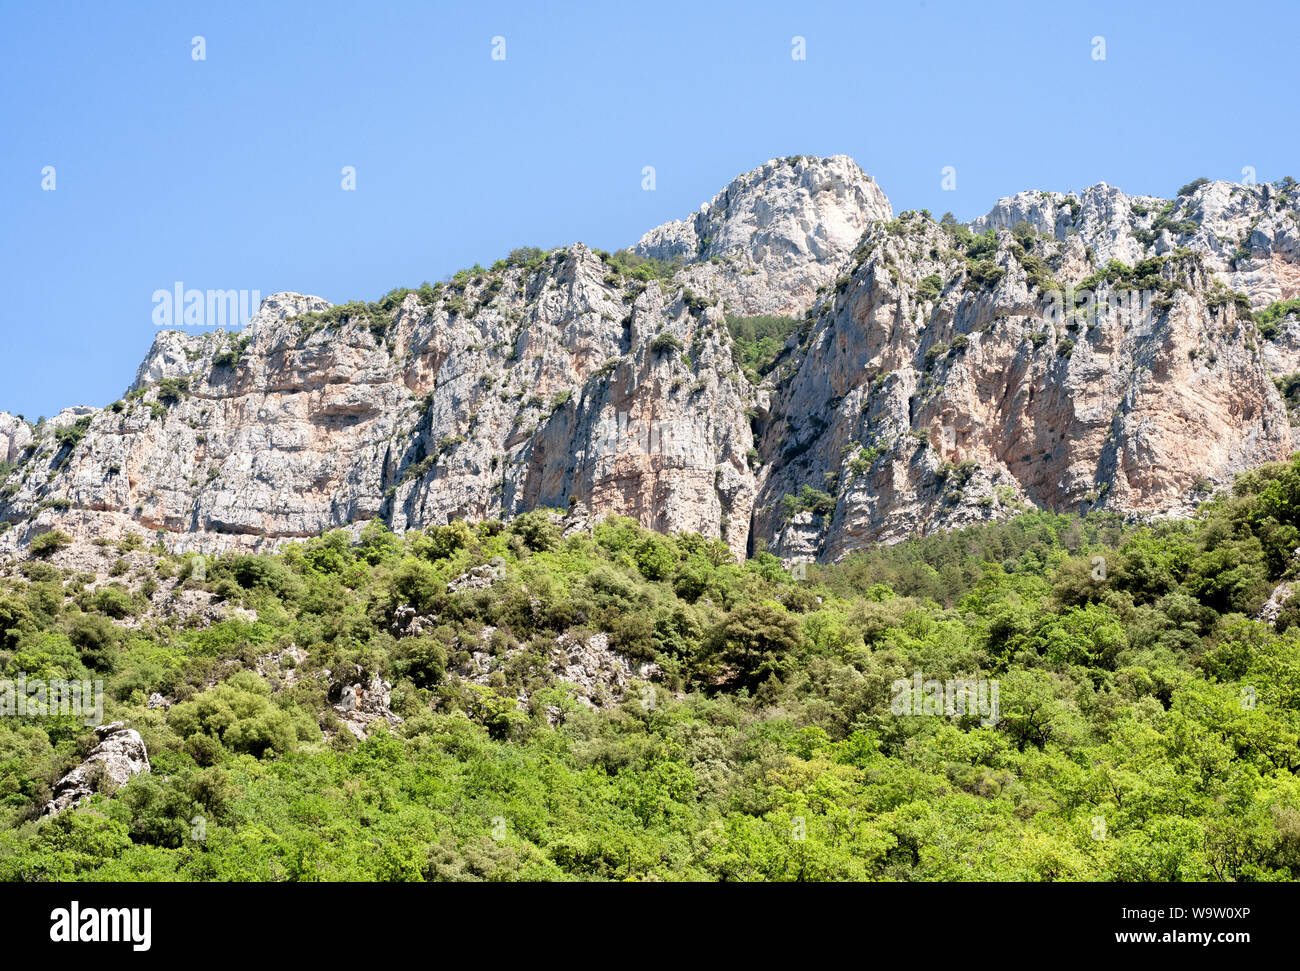 Les falaises de Rougon, également connu sous le nom de Gorges du Verdon ou Grand canyon du Verdon, Alpes de Haute Provence, dans le sud de la France, Europe Banque D'Images